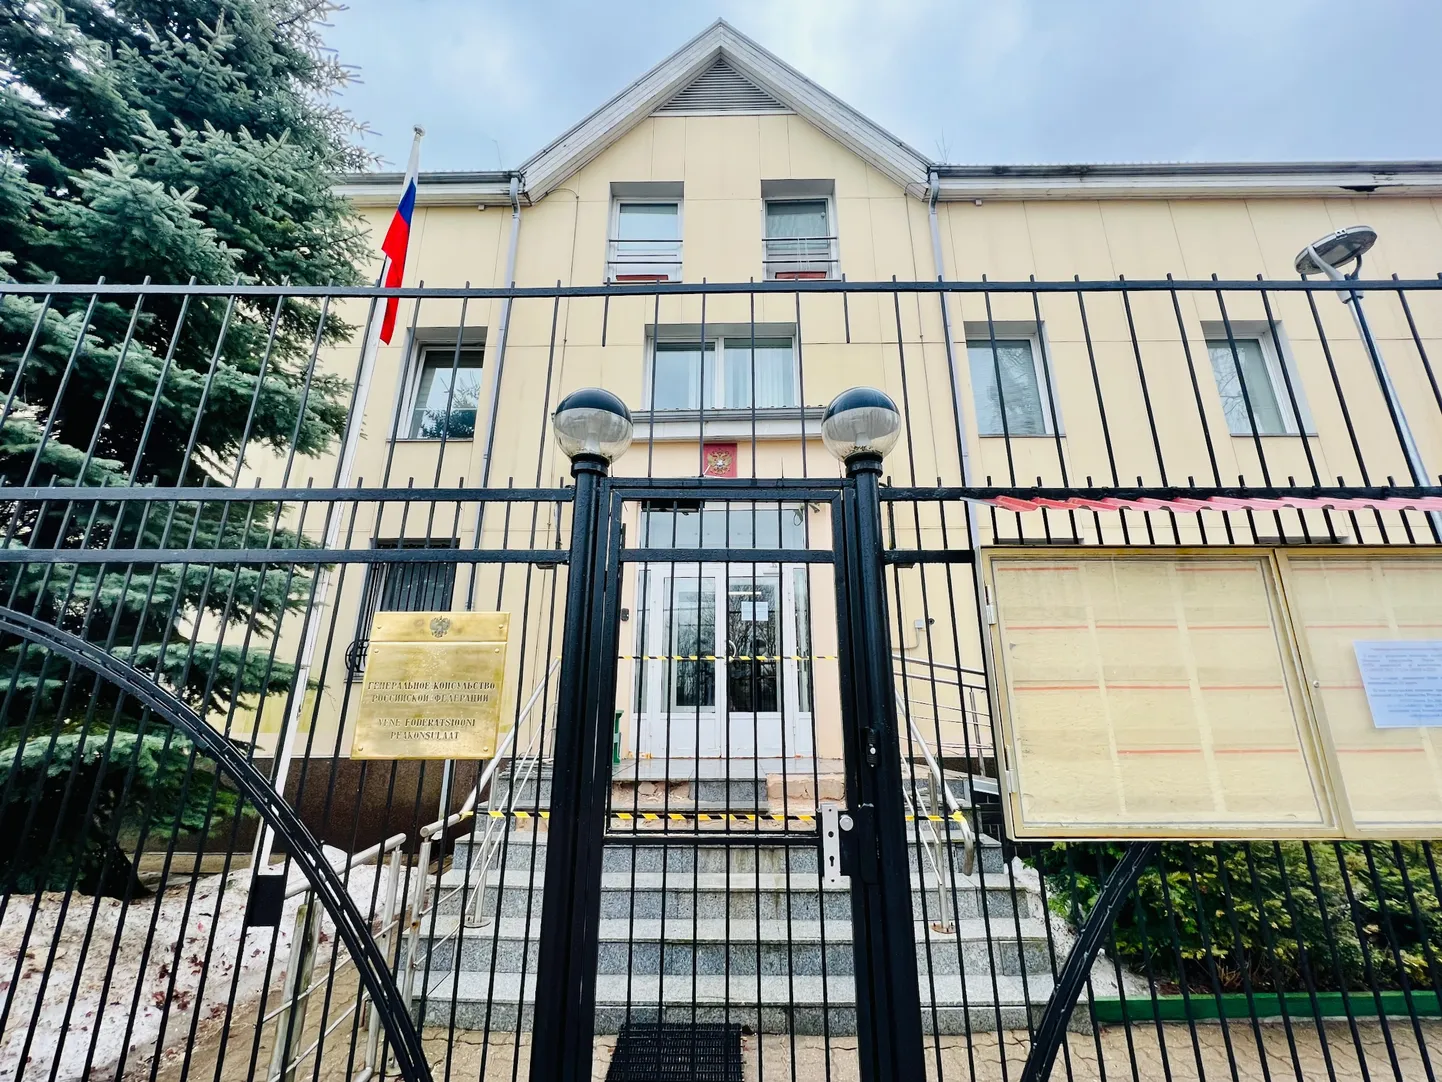 Narvas Vene Föderatsiooni peakonsulaadi väraval on teade, et konsulaat on Eesti võimude otsusega suletud ning isikute ja dokumentide vastuvõtt 6. aprillist peatatud.